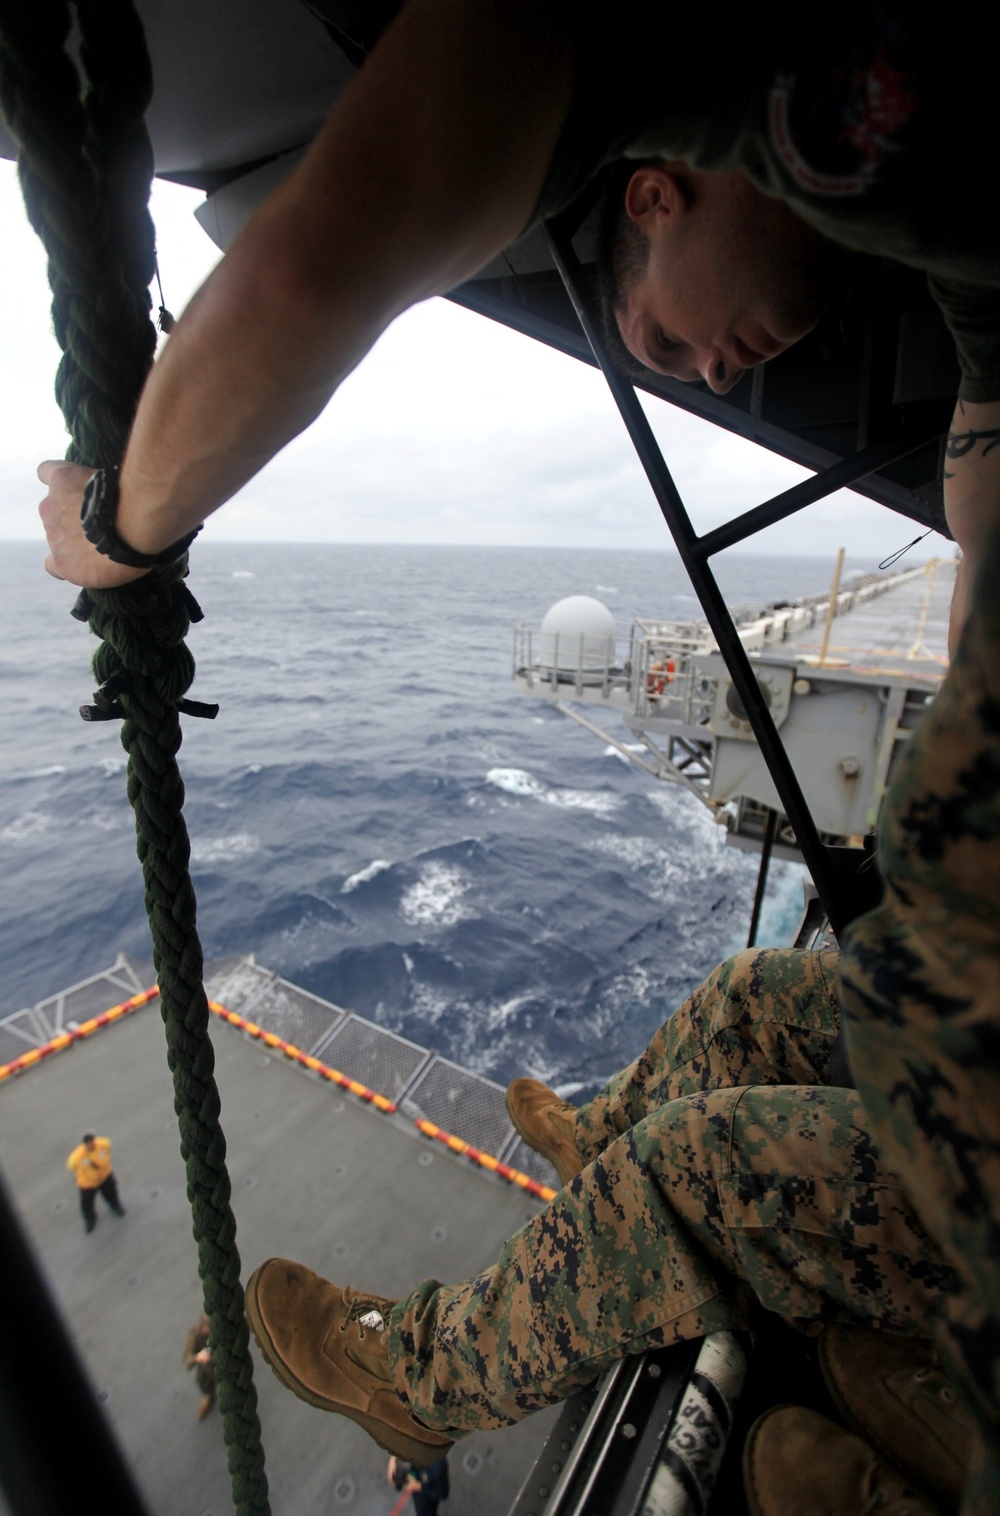 Raid force refines fast-rope skills at sea